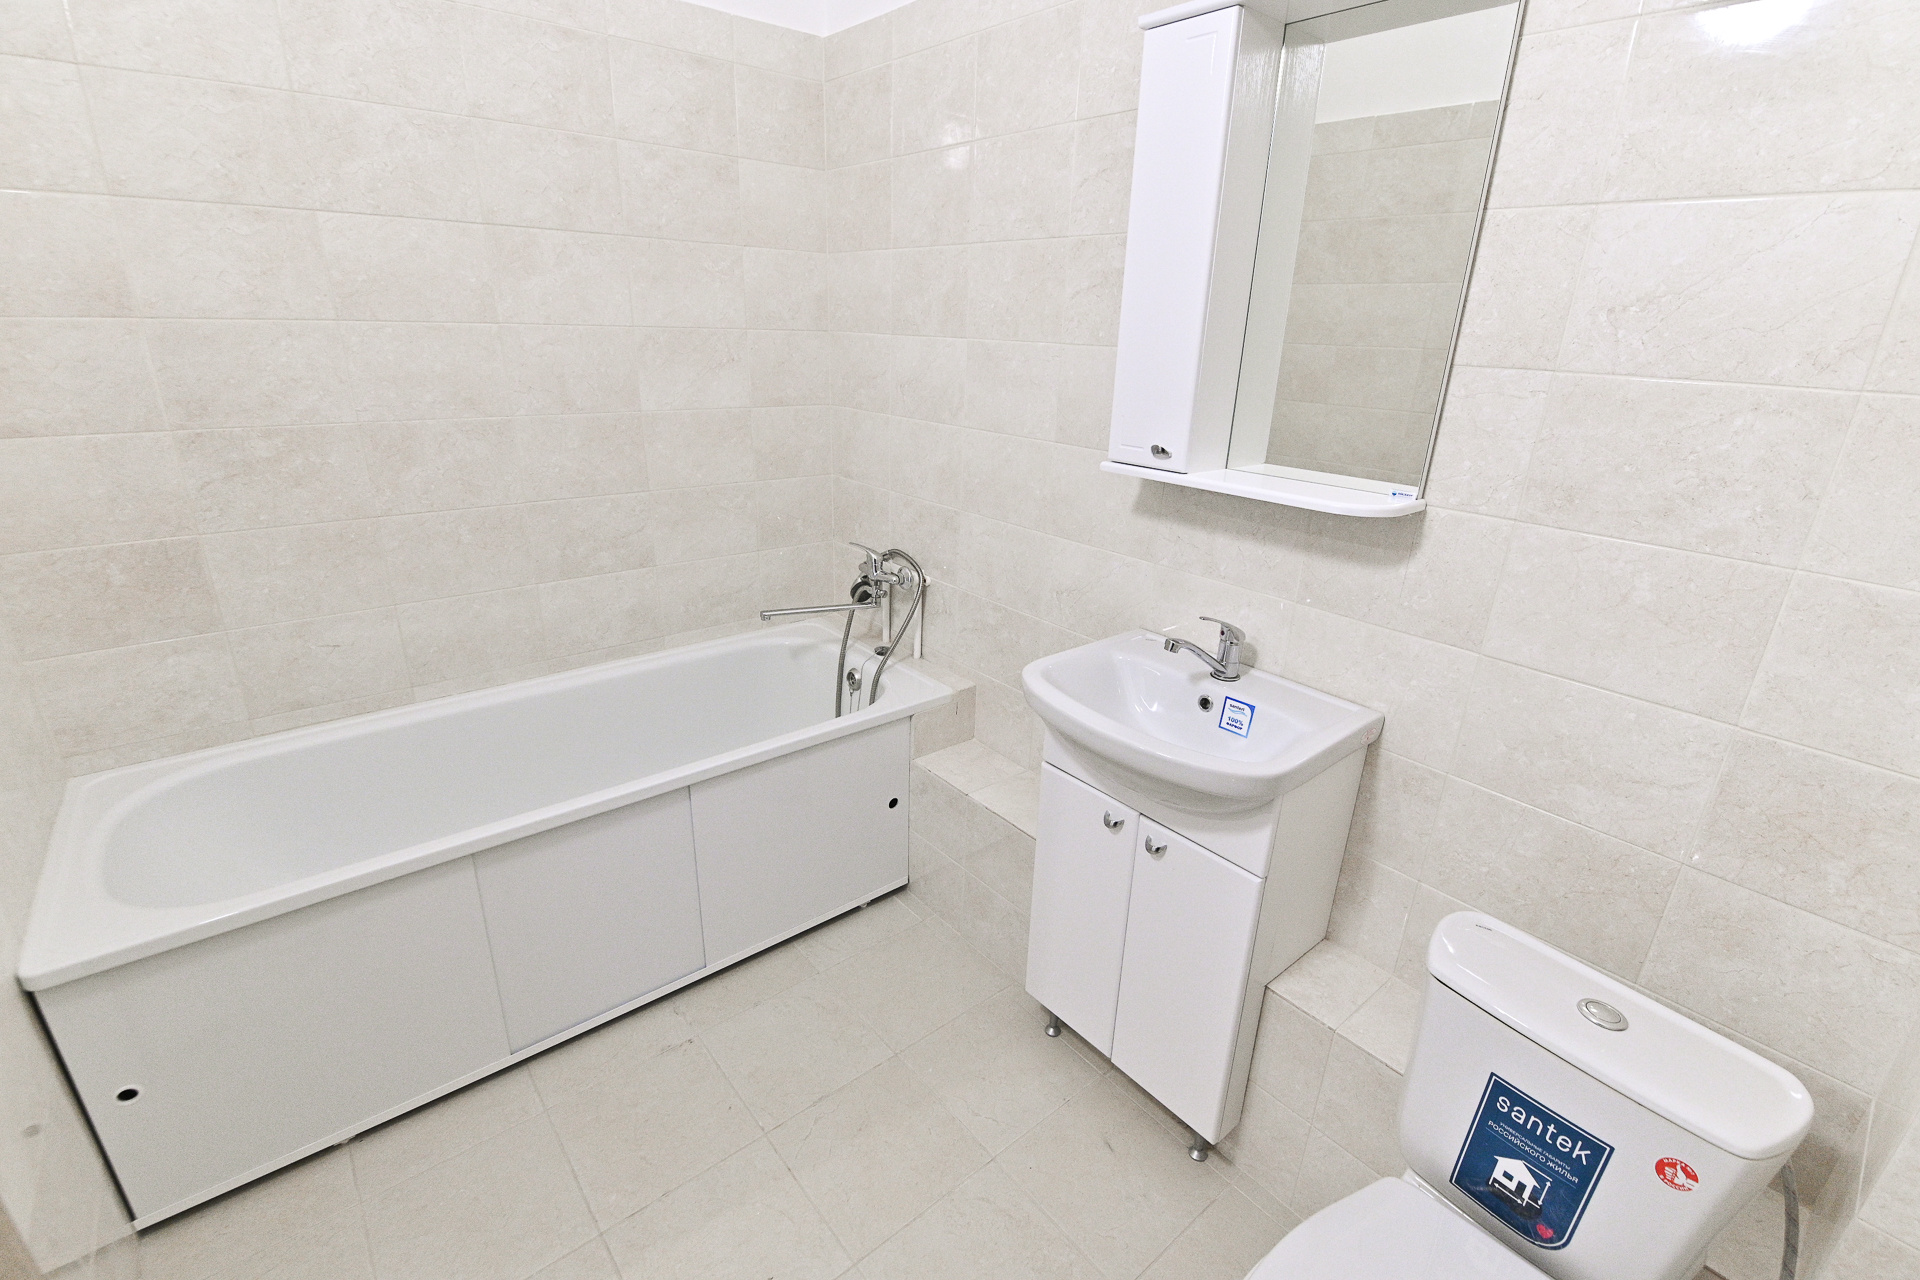 В квартире установлена даже вся необходимая сантехника и современная мебель для ванной — зеркало и тумба под раковиной